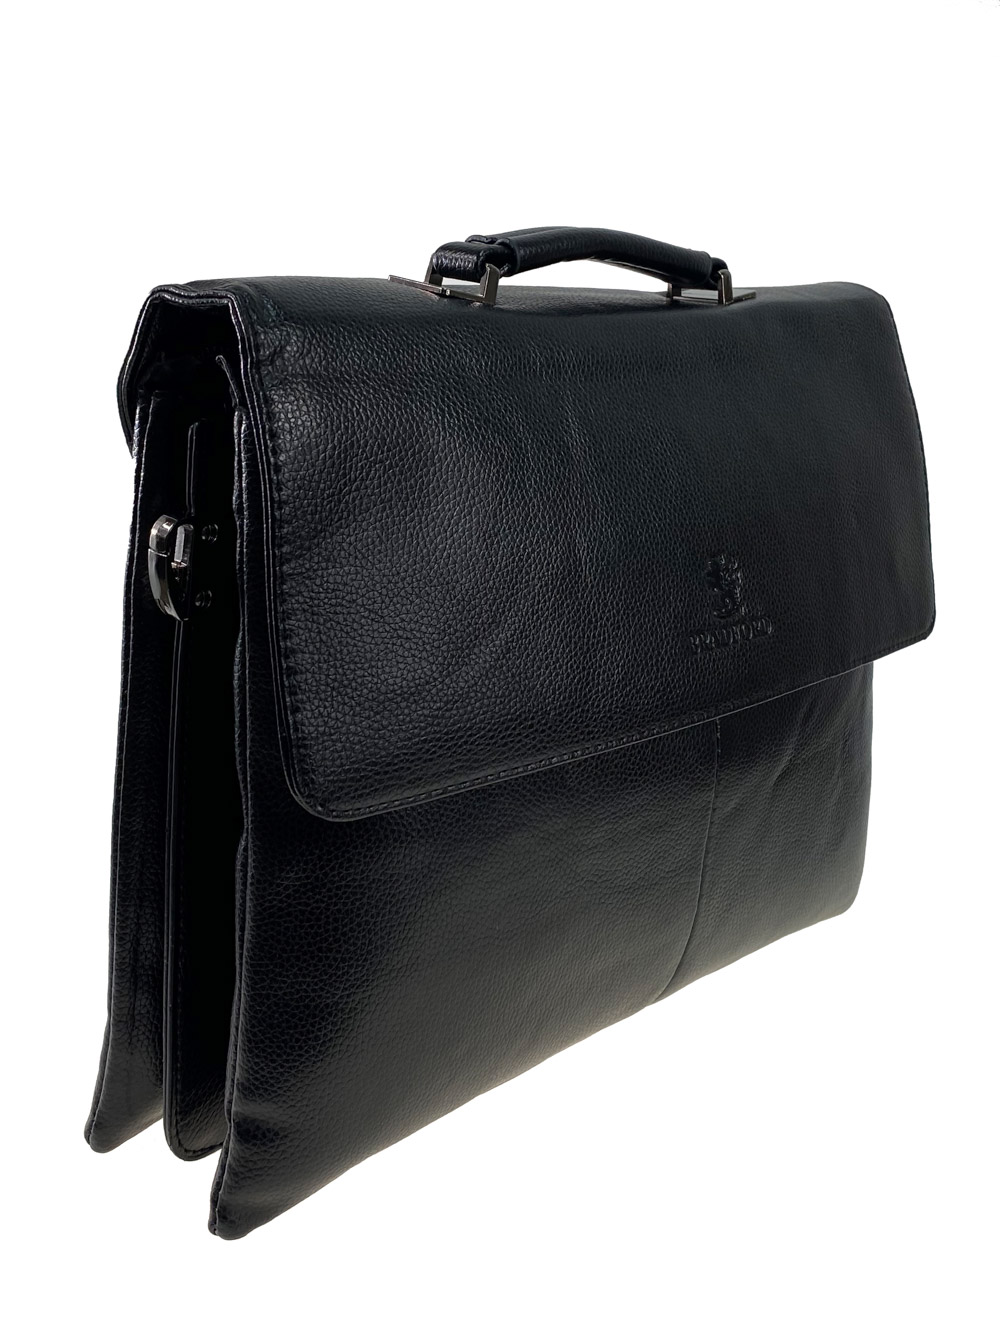 Мужская сумка-портфель из фактурной искусственной кожи, цвет чёрный